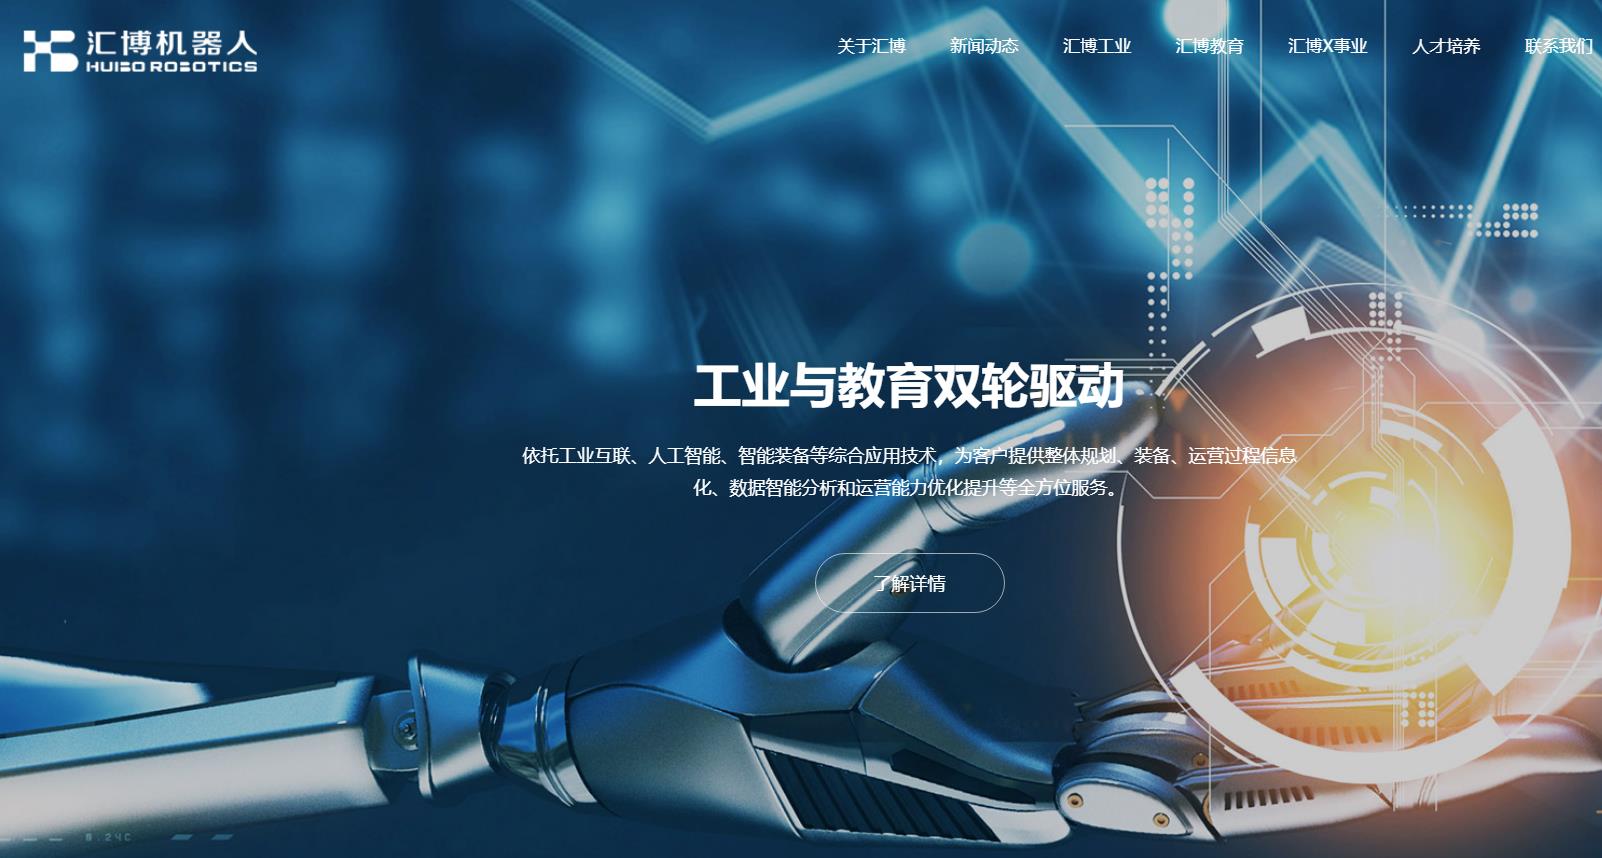 江苏汇博机器人技术股份有限公司机器人生产及研发基地建设项目一期项目总投资 42412.74万元